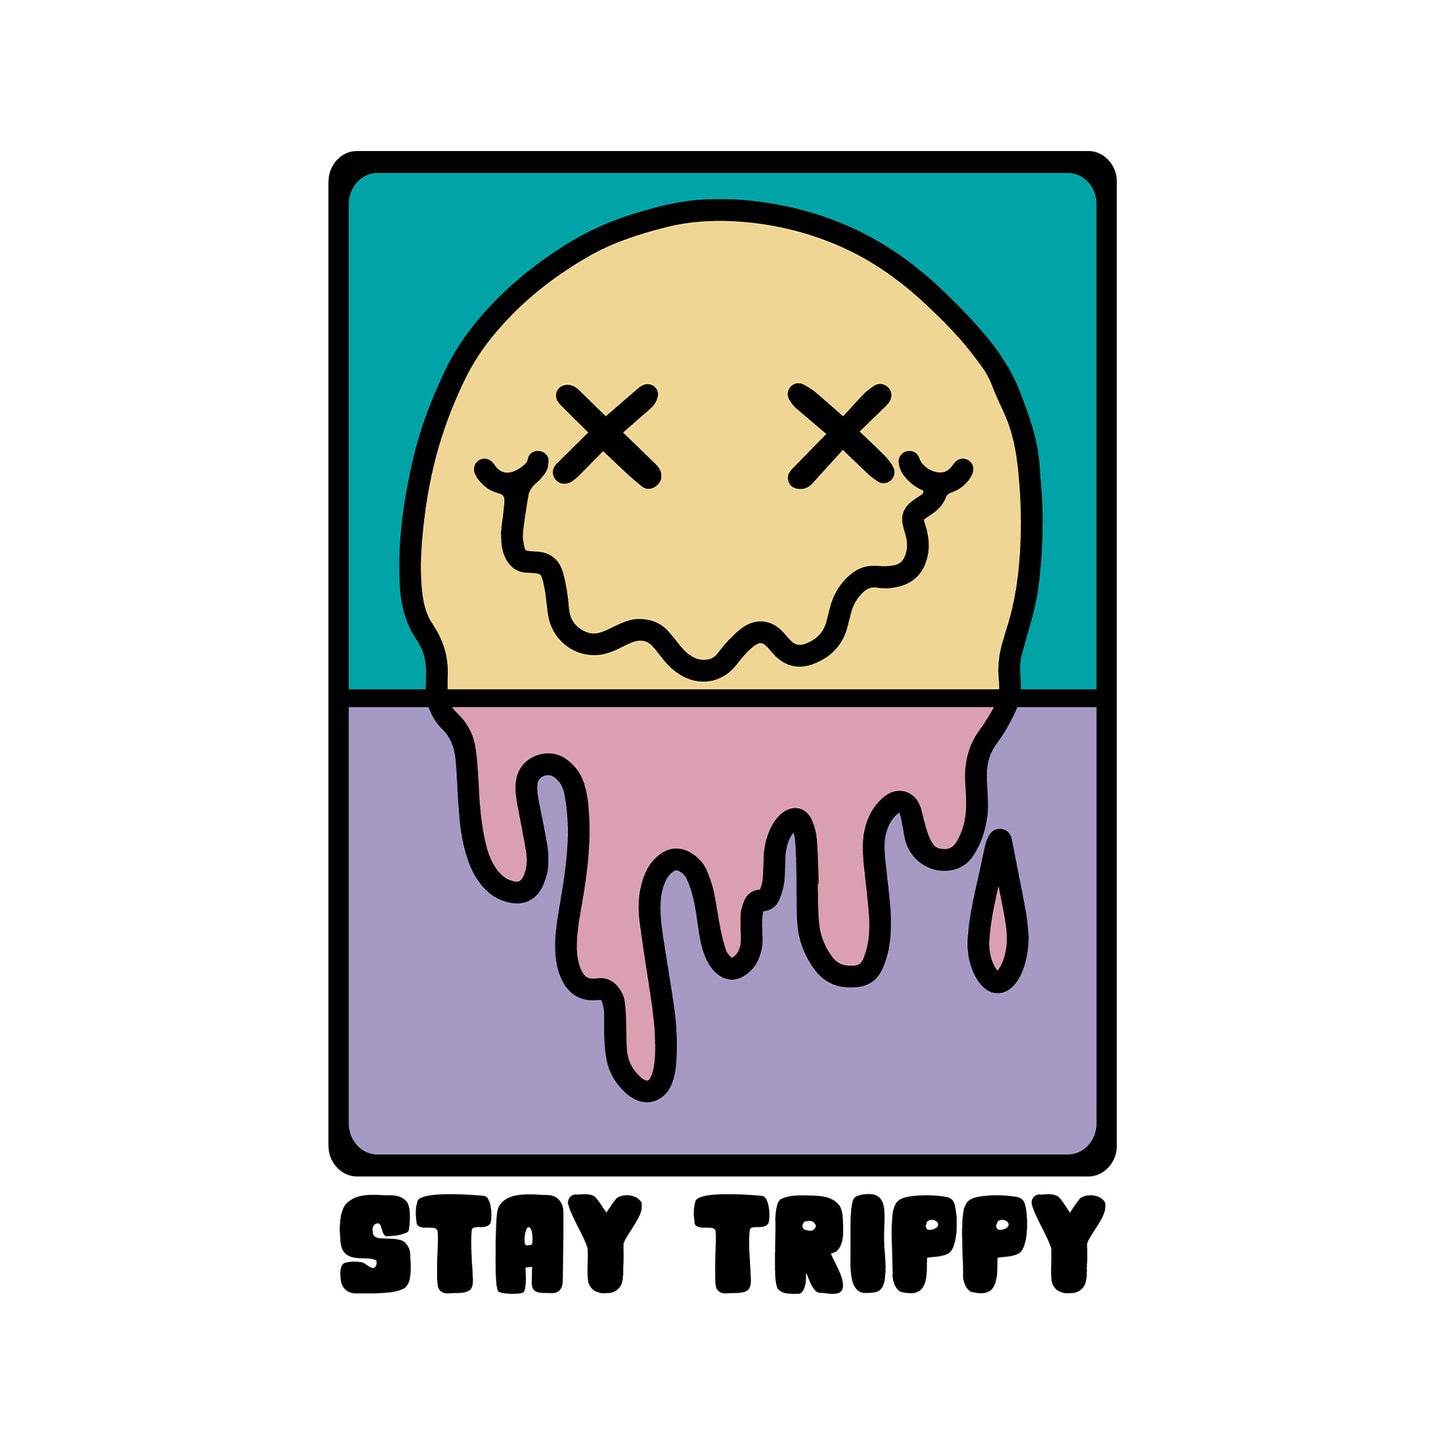 Stay Trippy Graphic Unisex Sweatshirt